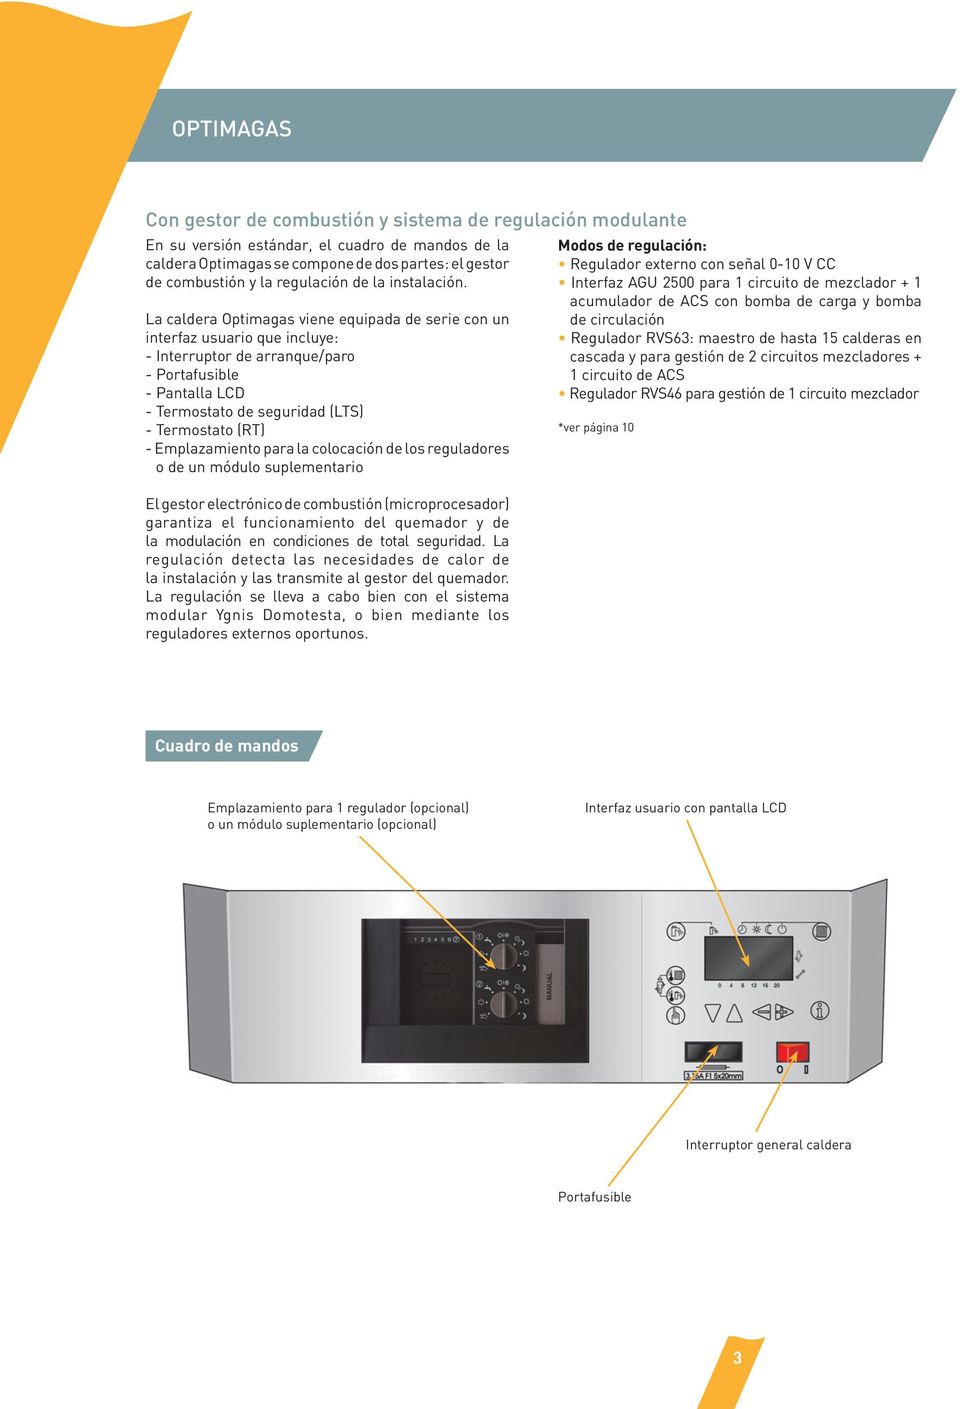 La caldera Optimagas viene equipada de serie con un interfaz usuario que incluye: - Interruptor de arranque/paro - Portafusible - Pantalla LCD - Termostato de seguridad (LTS) - Termostato (RT) -